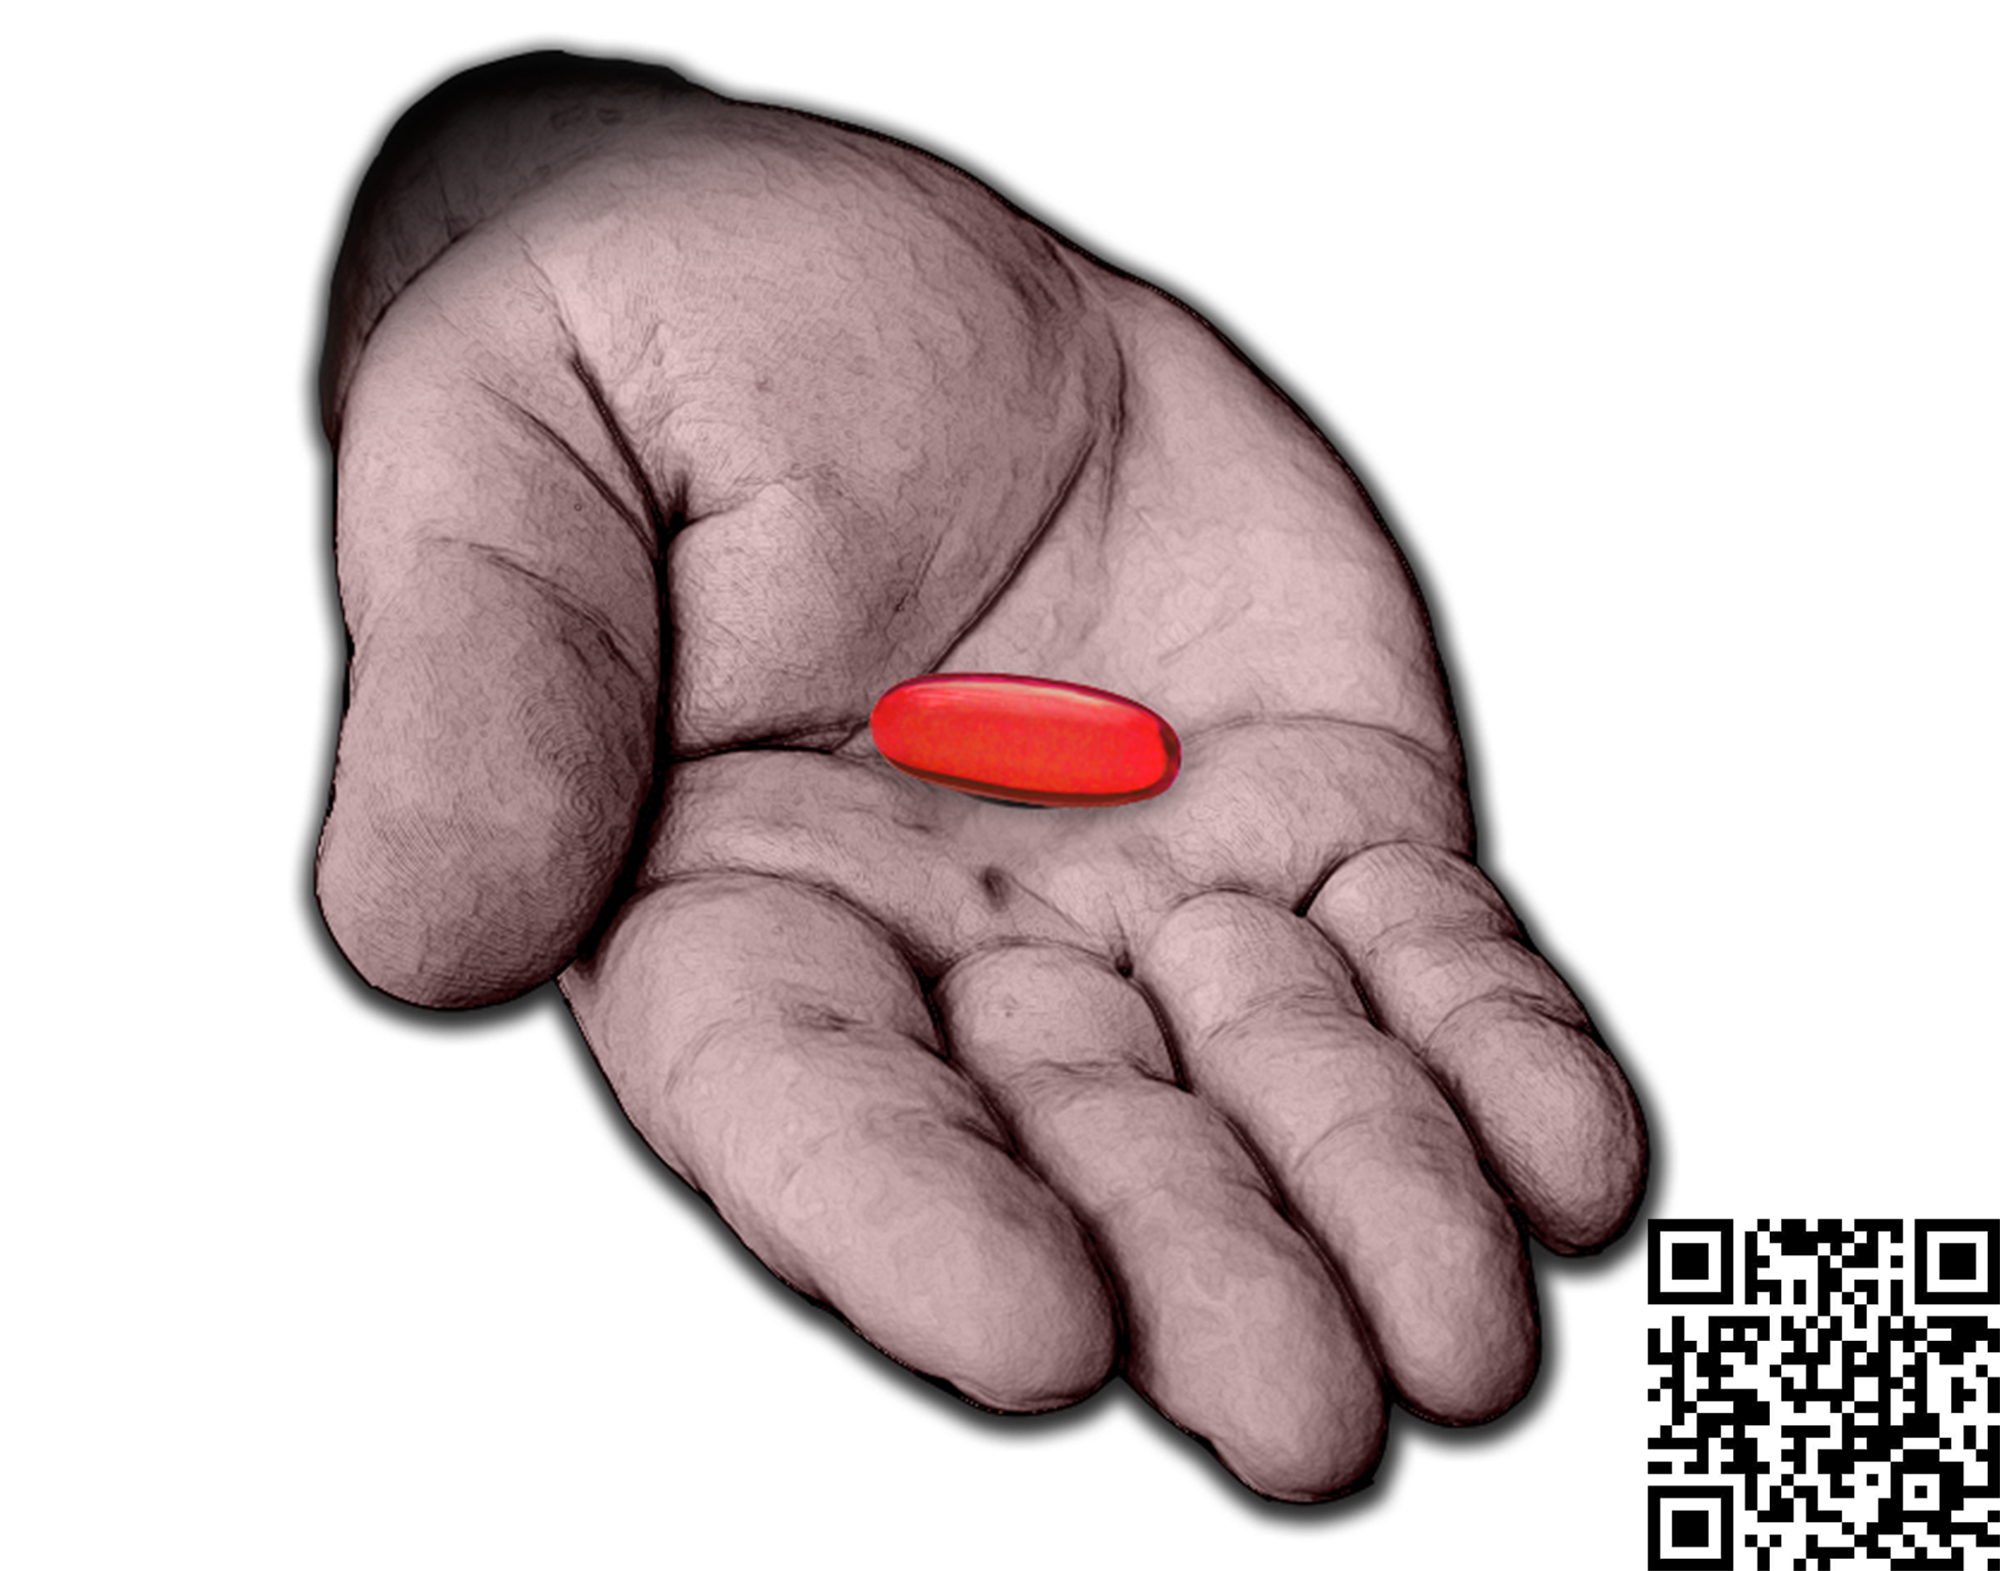 Будь жесток купить. Морфеус красная и синяя таблетка. Красная таблетка. Таблетки в руке. Красная таблетка пилюля.